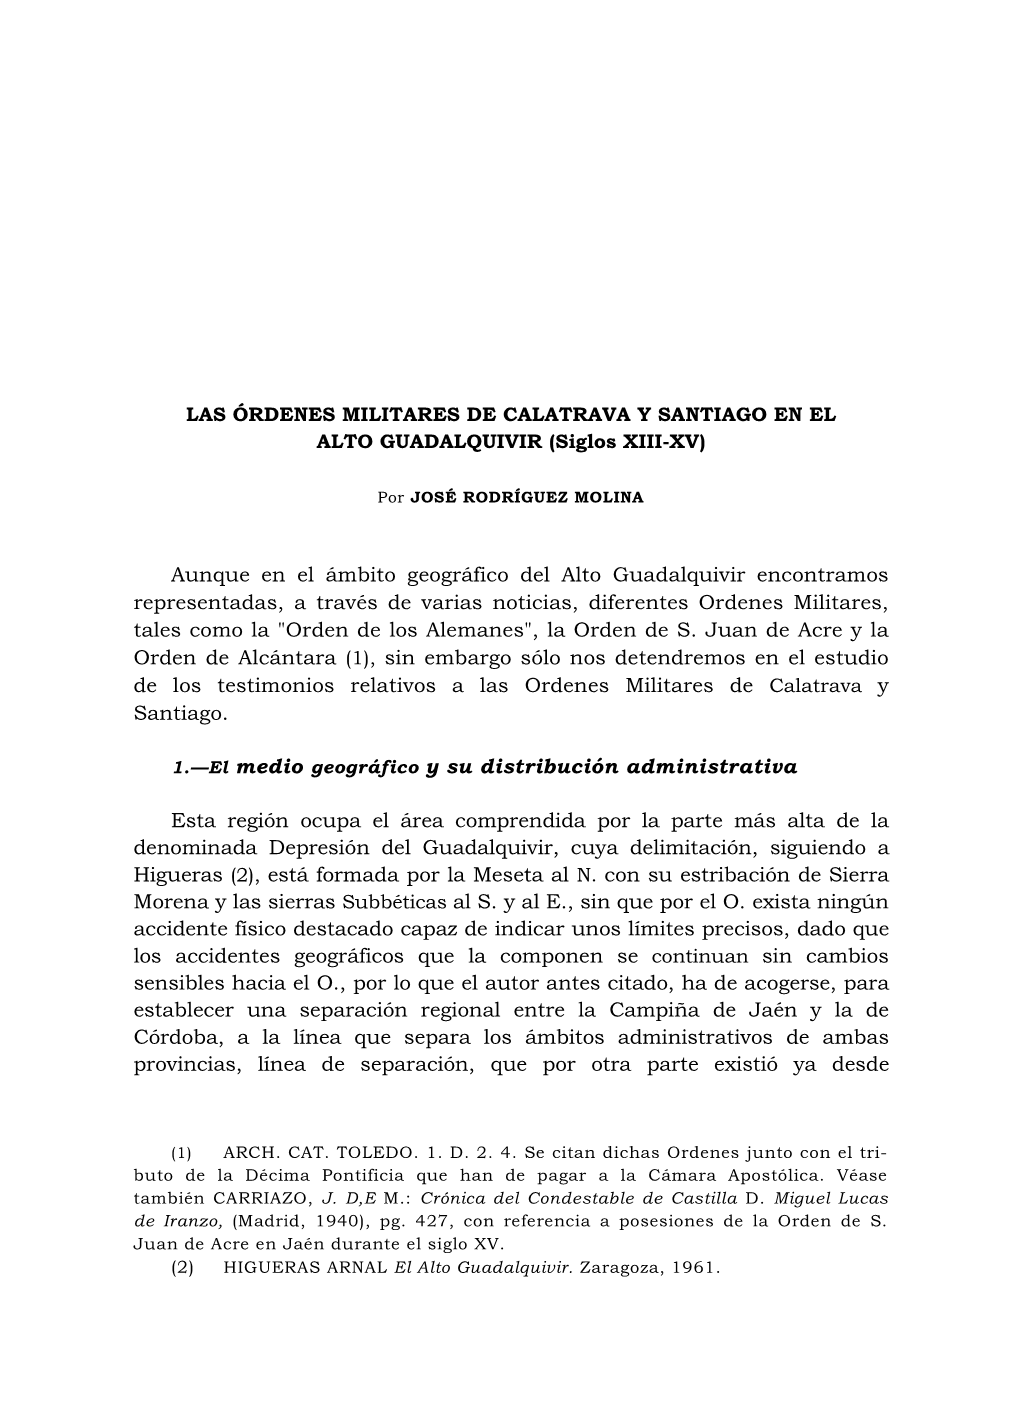 LAS ÓRDENES MILITARES DE CALATRAVA Y SANTIAGO EN EL ALTO GUADALQUIVIR (Siglos XIII-XV)